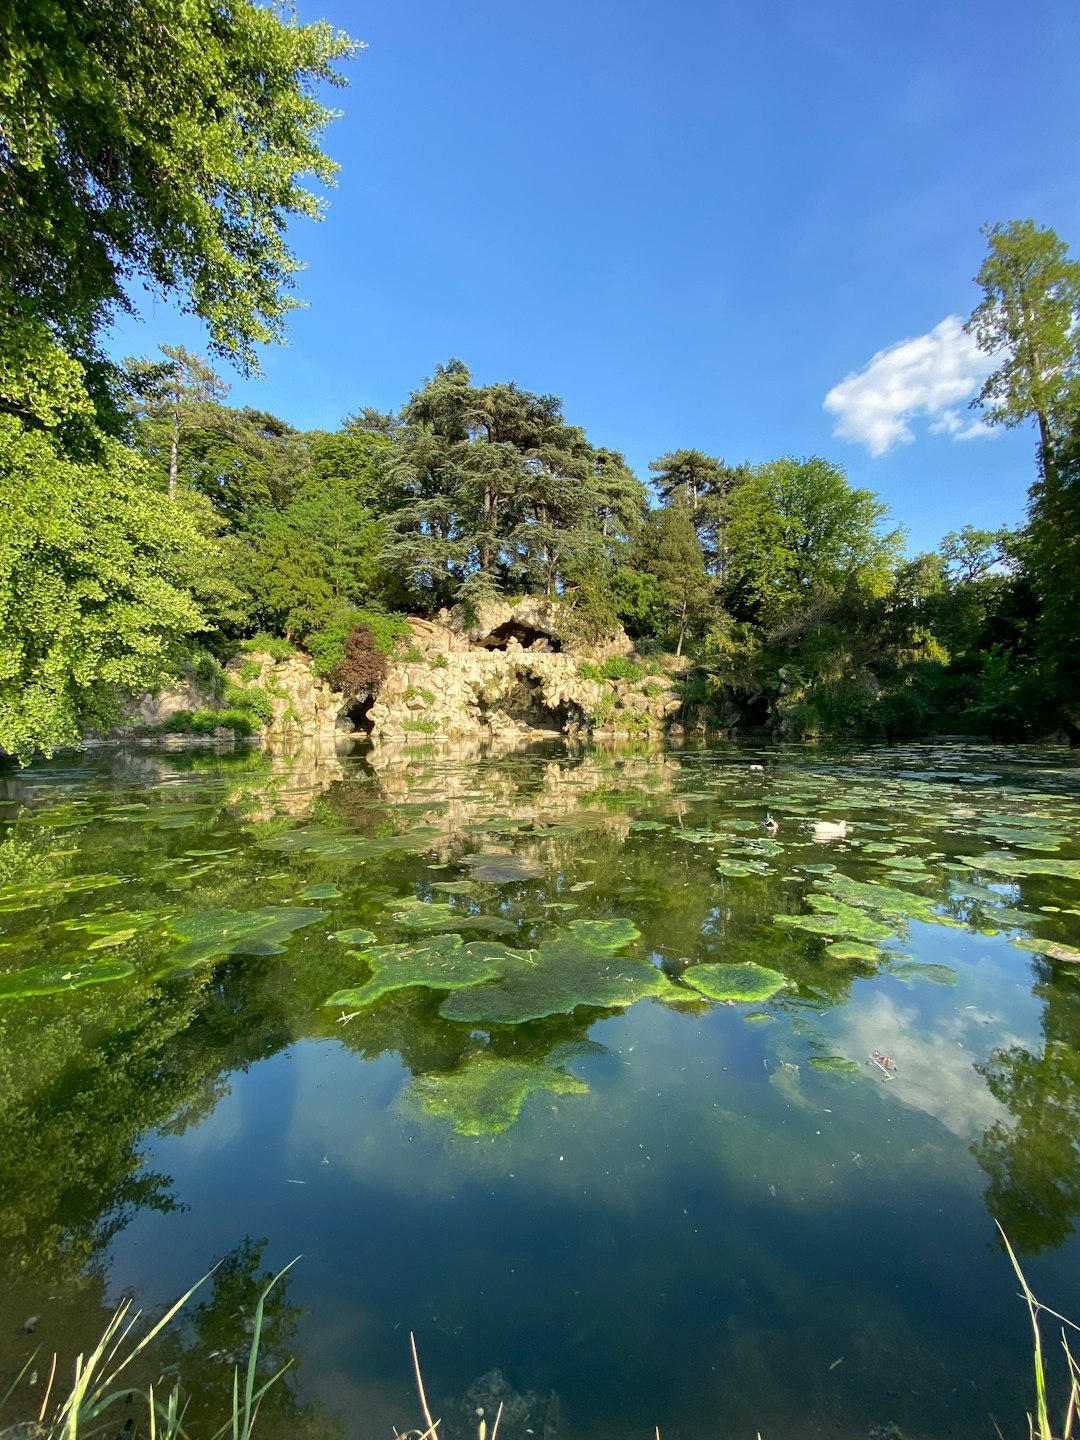 Nature reserve photo spot Bois de Boulogne Chavenay